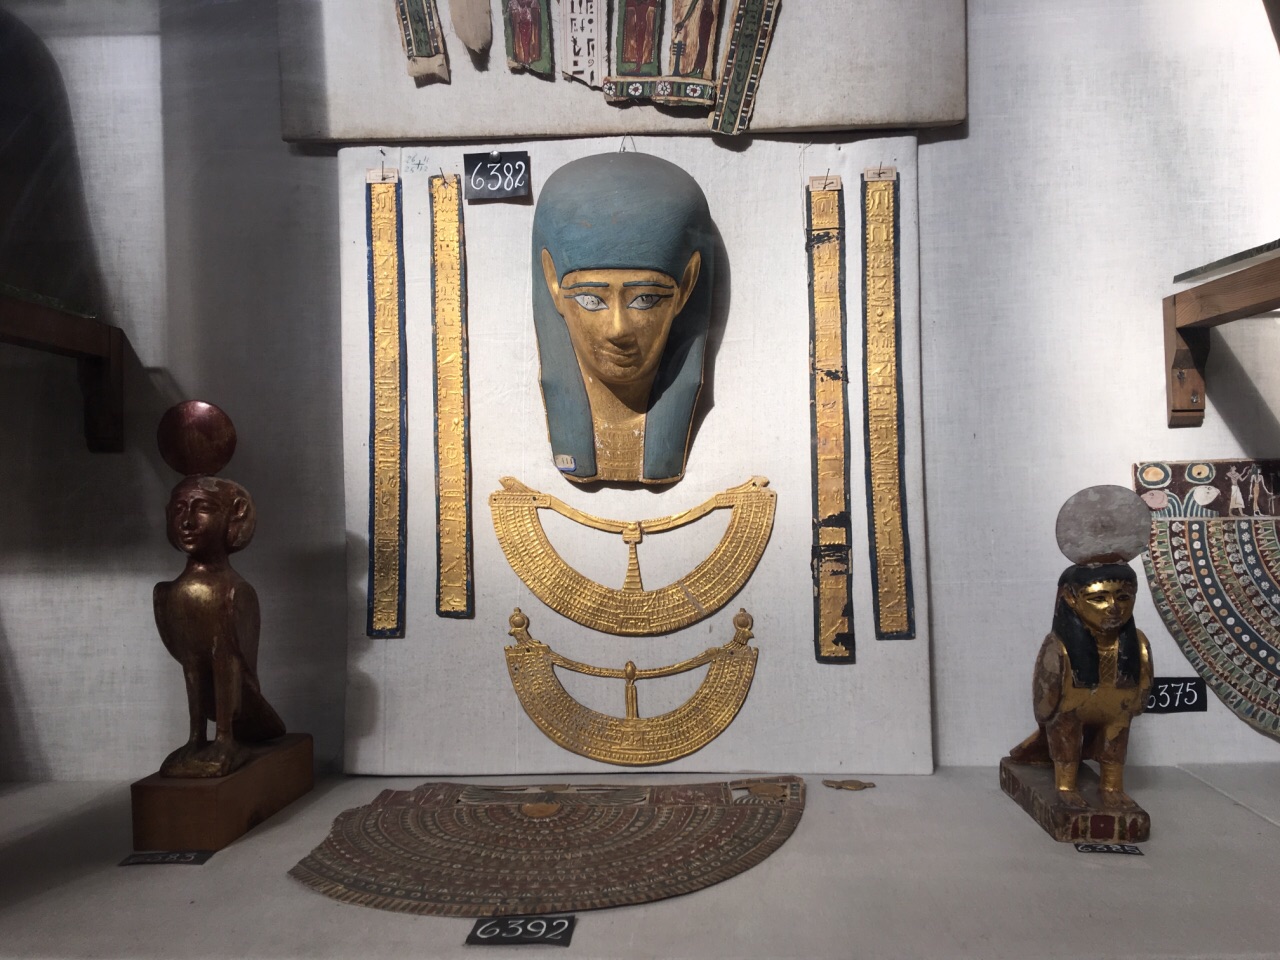 埃及博物馆,先看二层的木乃伊,拍照的¥50诶可以不用花